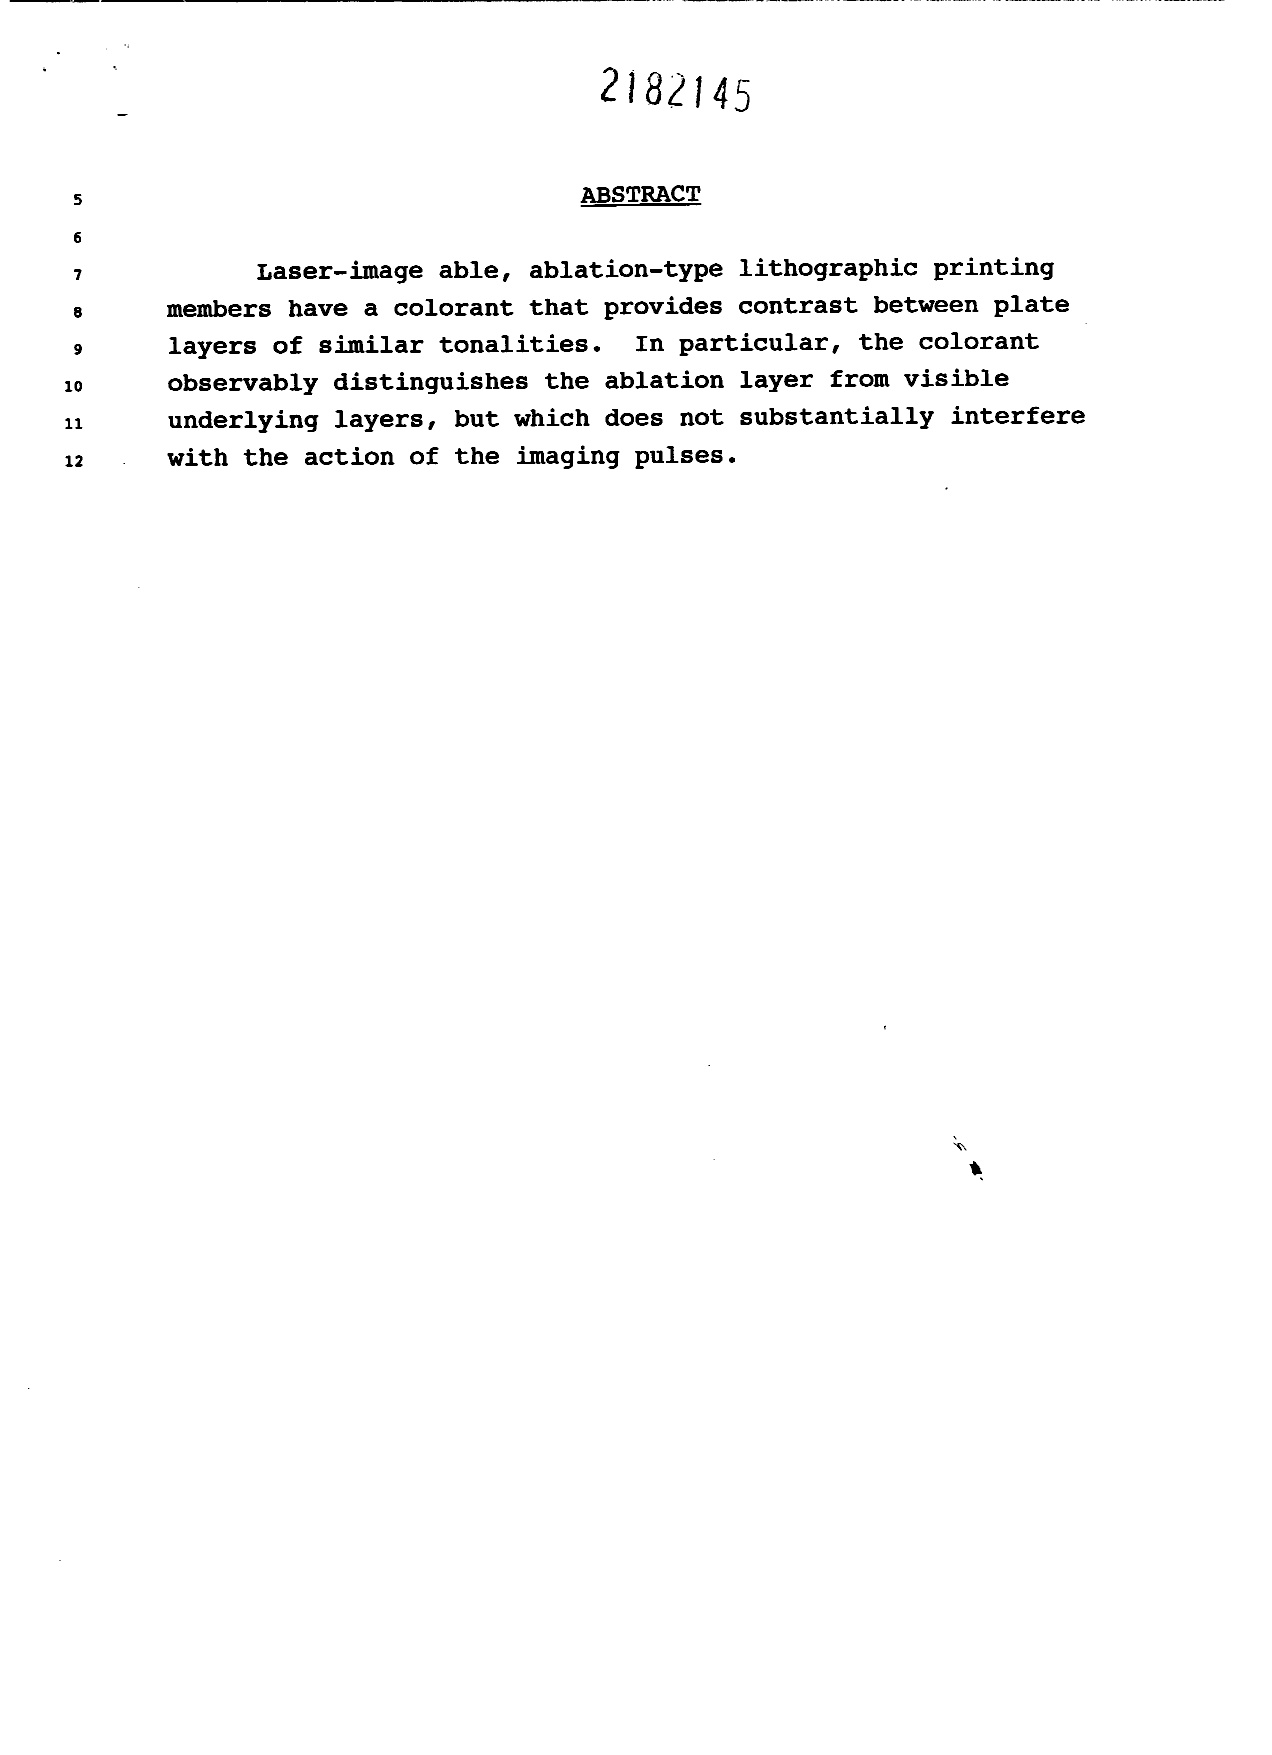 Document de brevet canadien 2182145. Abrégé 19961101. Image 1 de 1